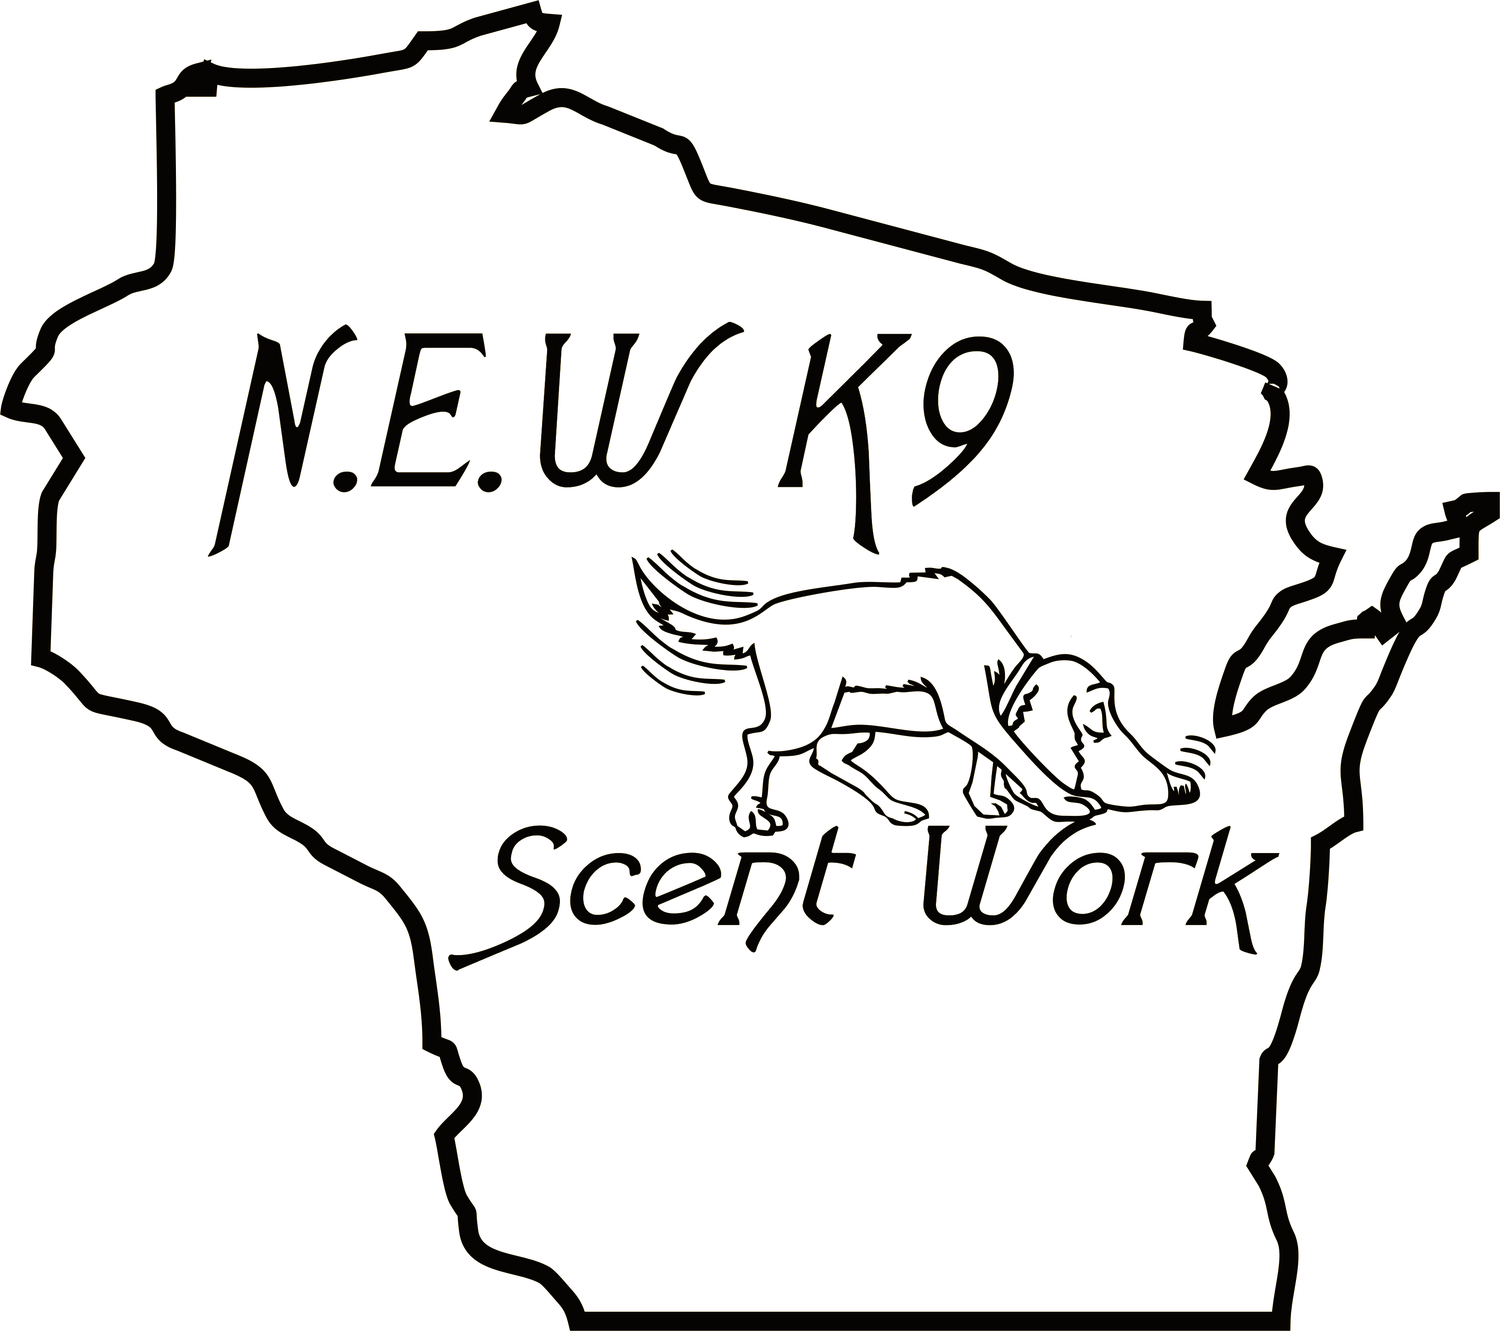 N.E.W K9 Scent Work